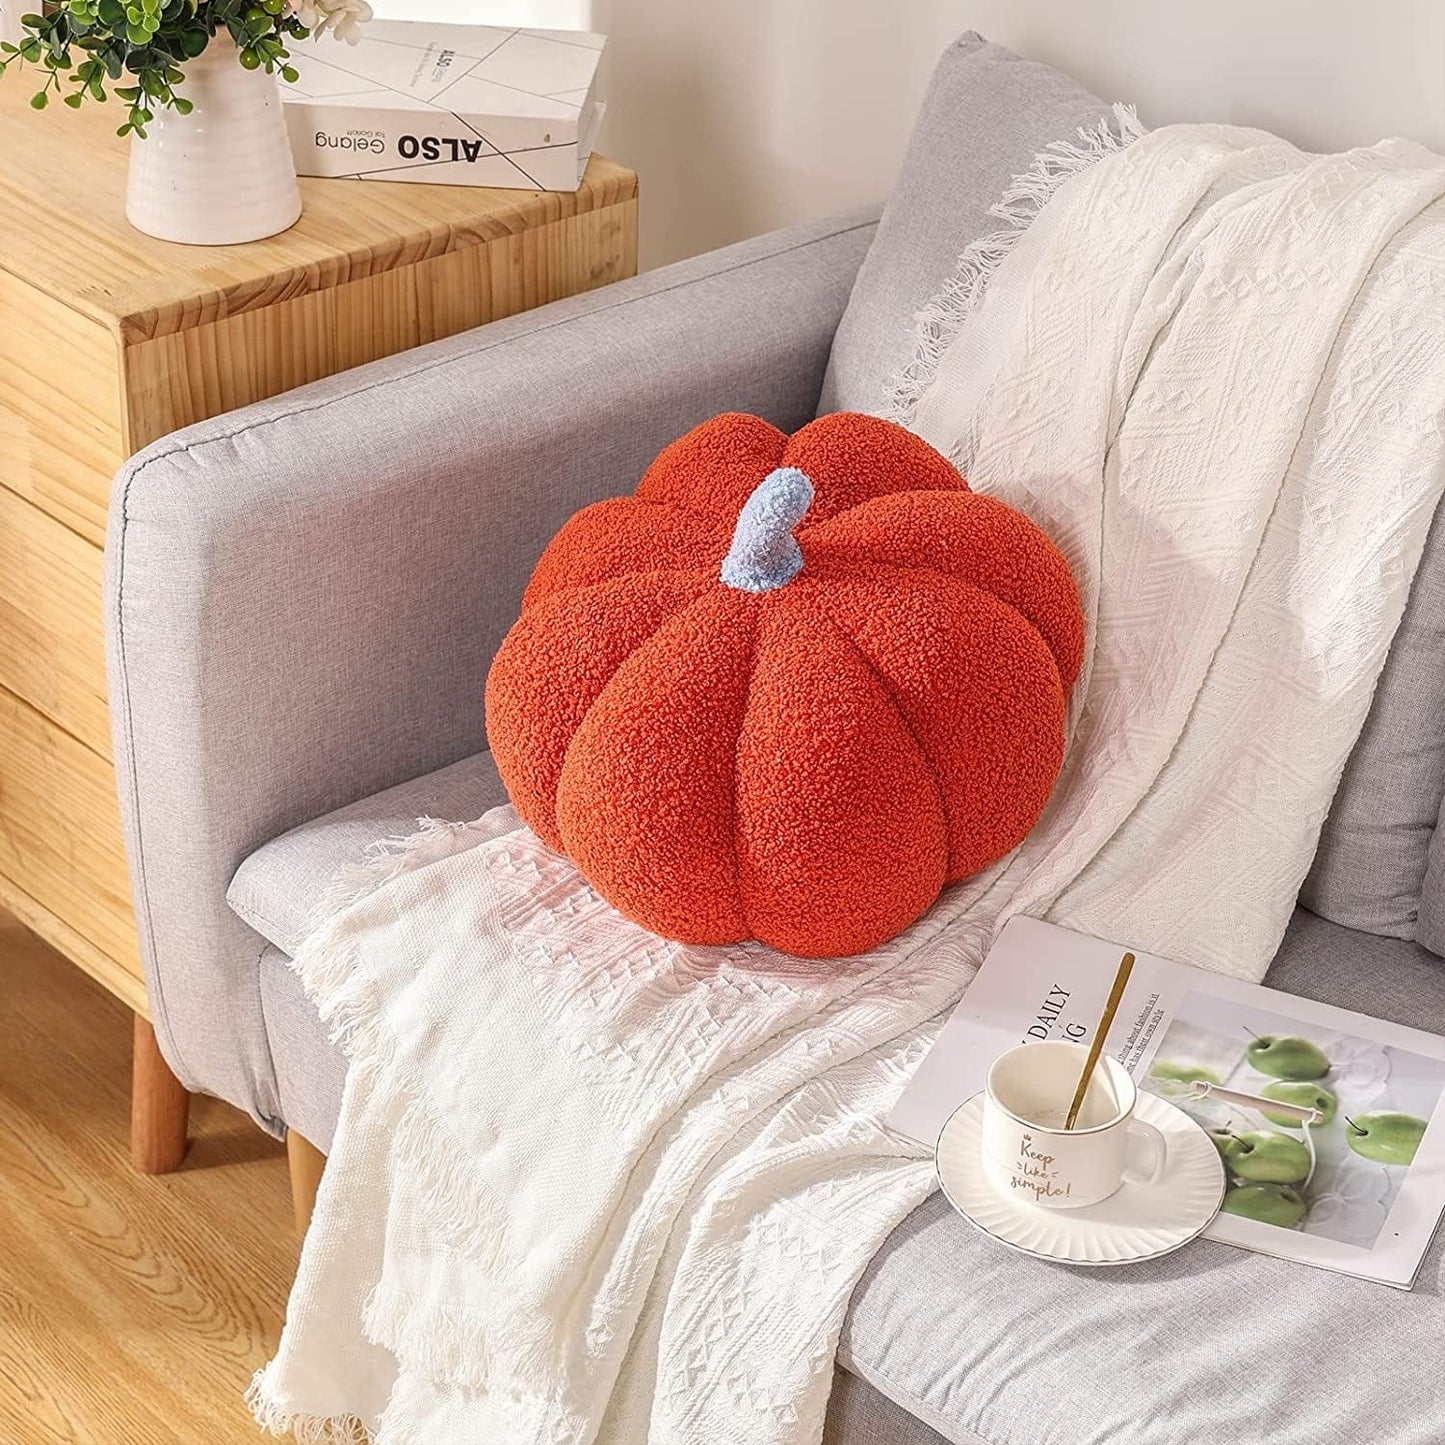 【LA000329】Comfy Pumpkin Pillow